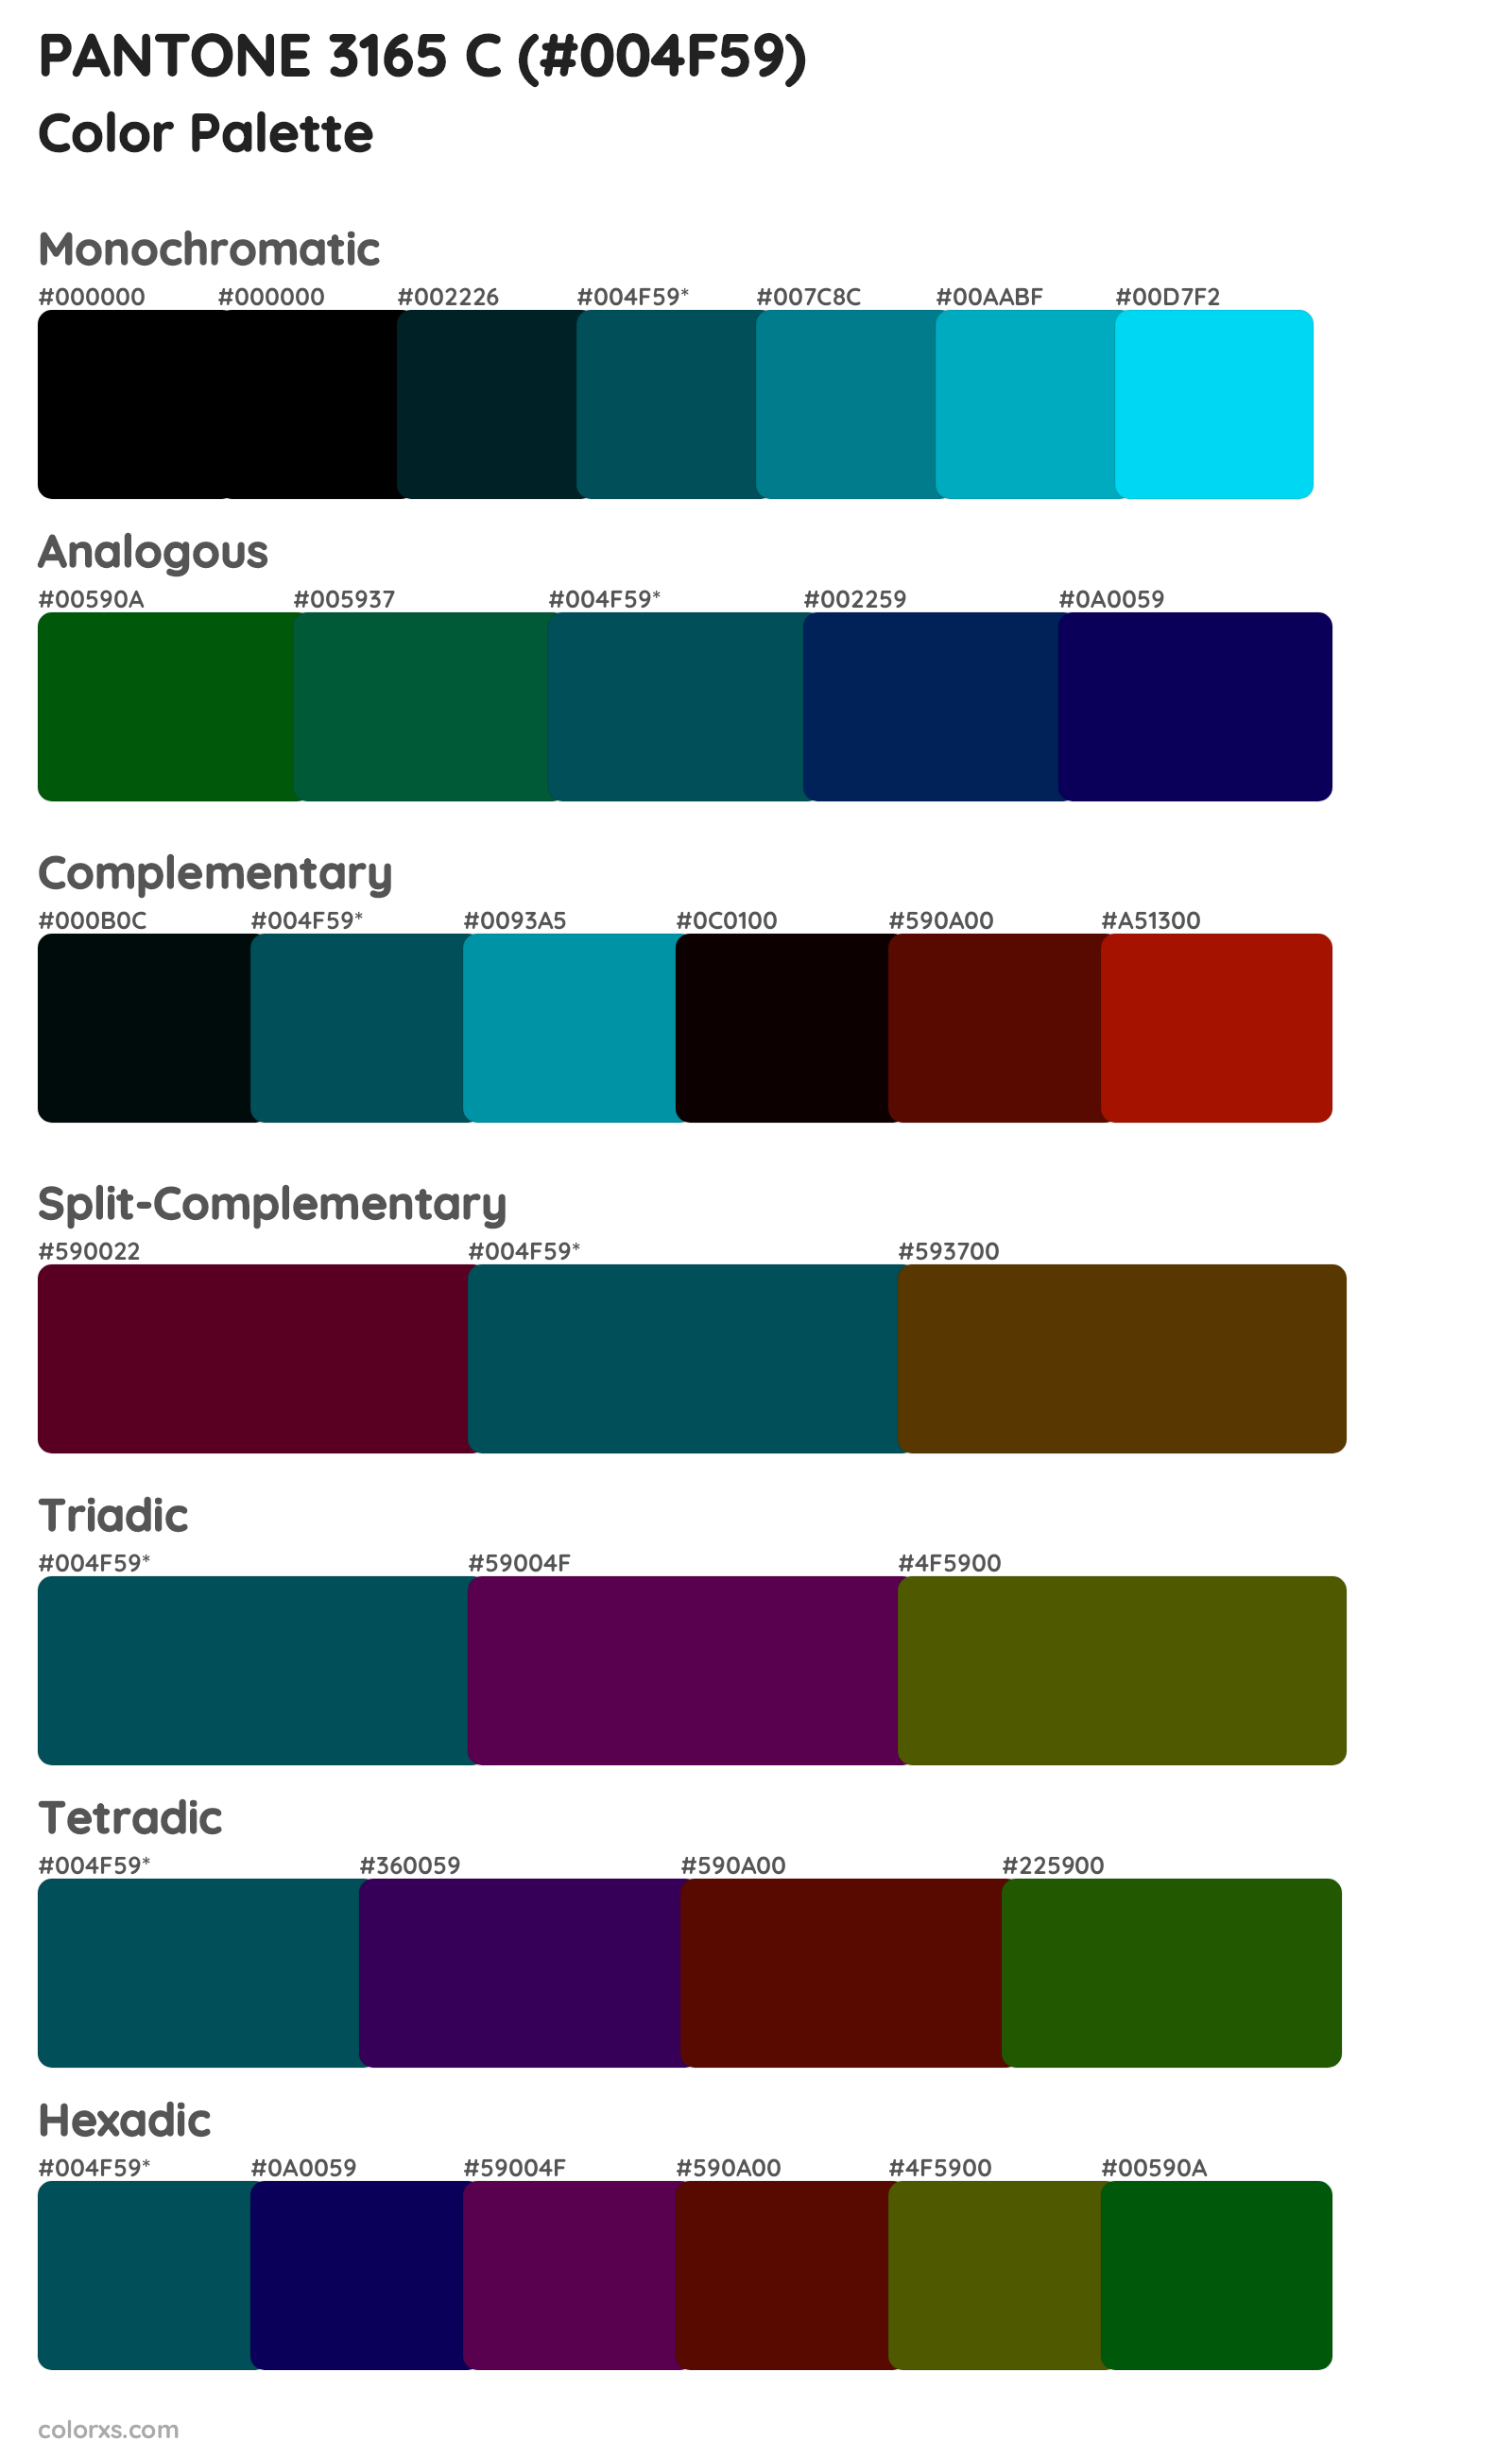 PANTONE 3165 C Color Scheme Palettes